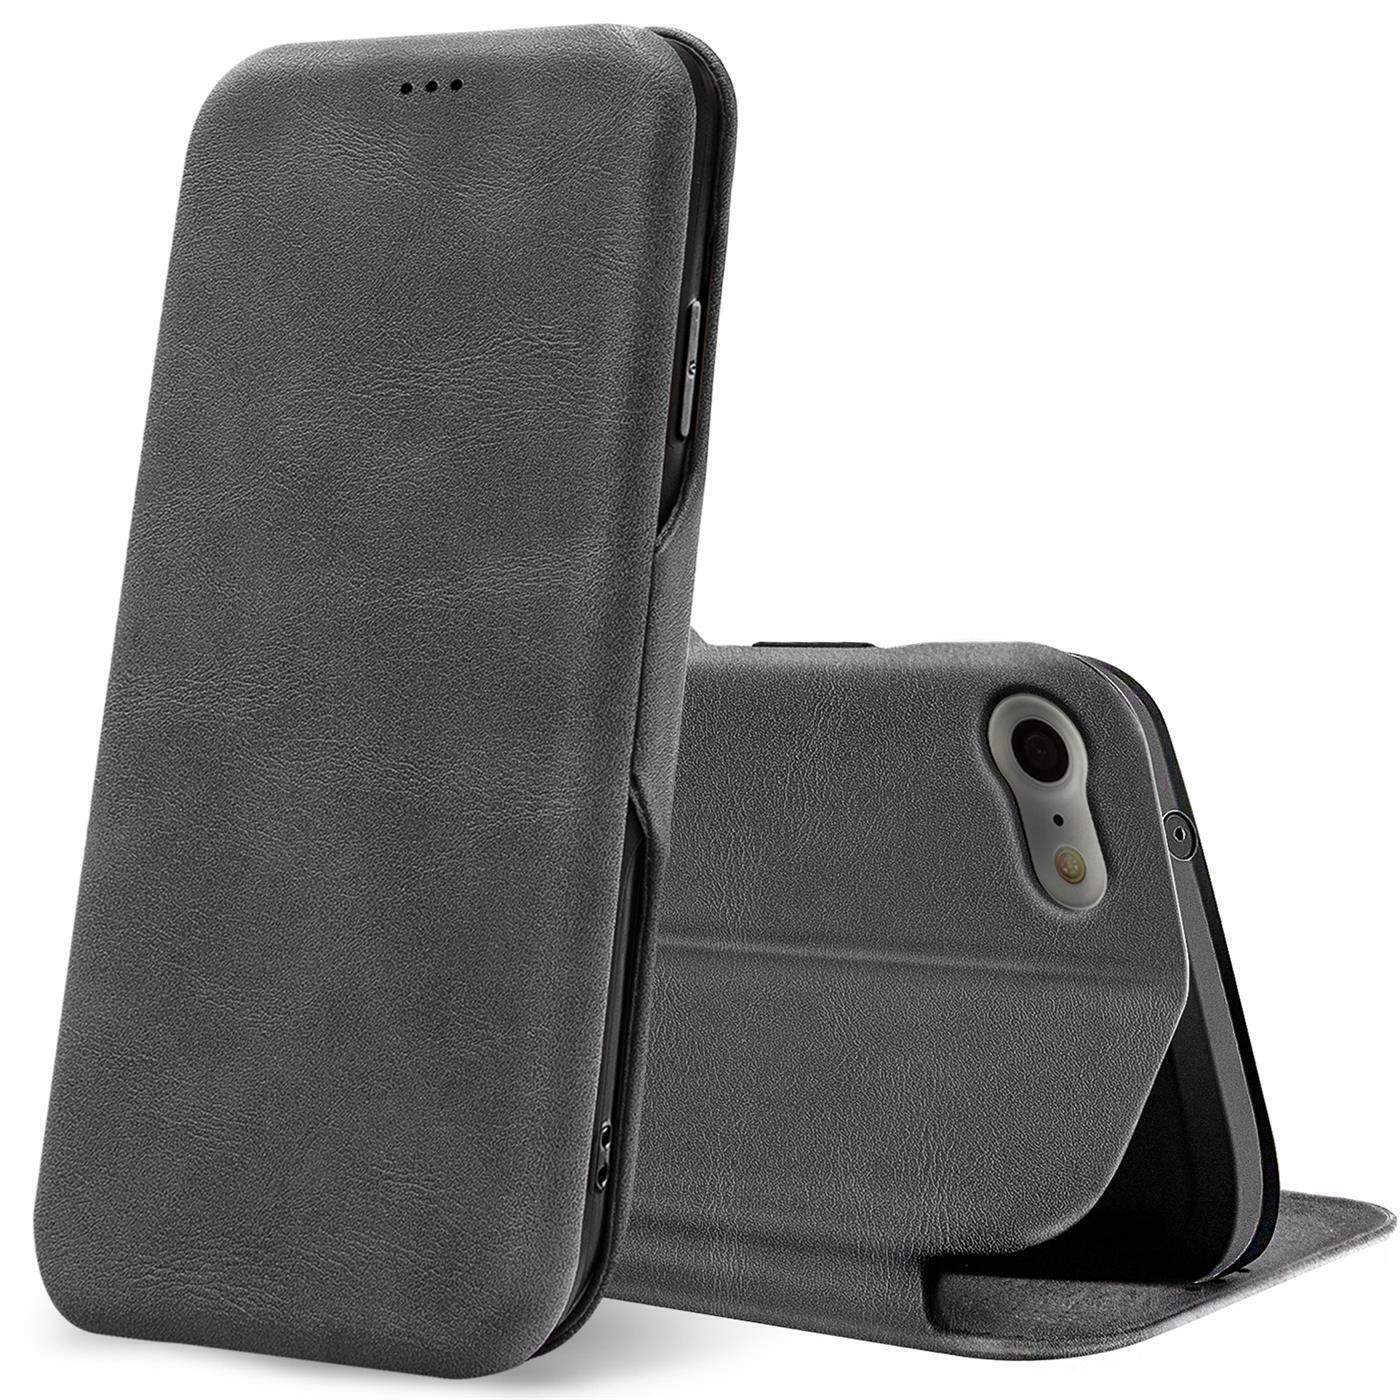 Für Apple iPhone 7 8 SE2 Handy Hülle Schutz Tasche Flip Case Klapphülle